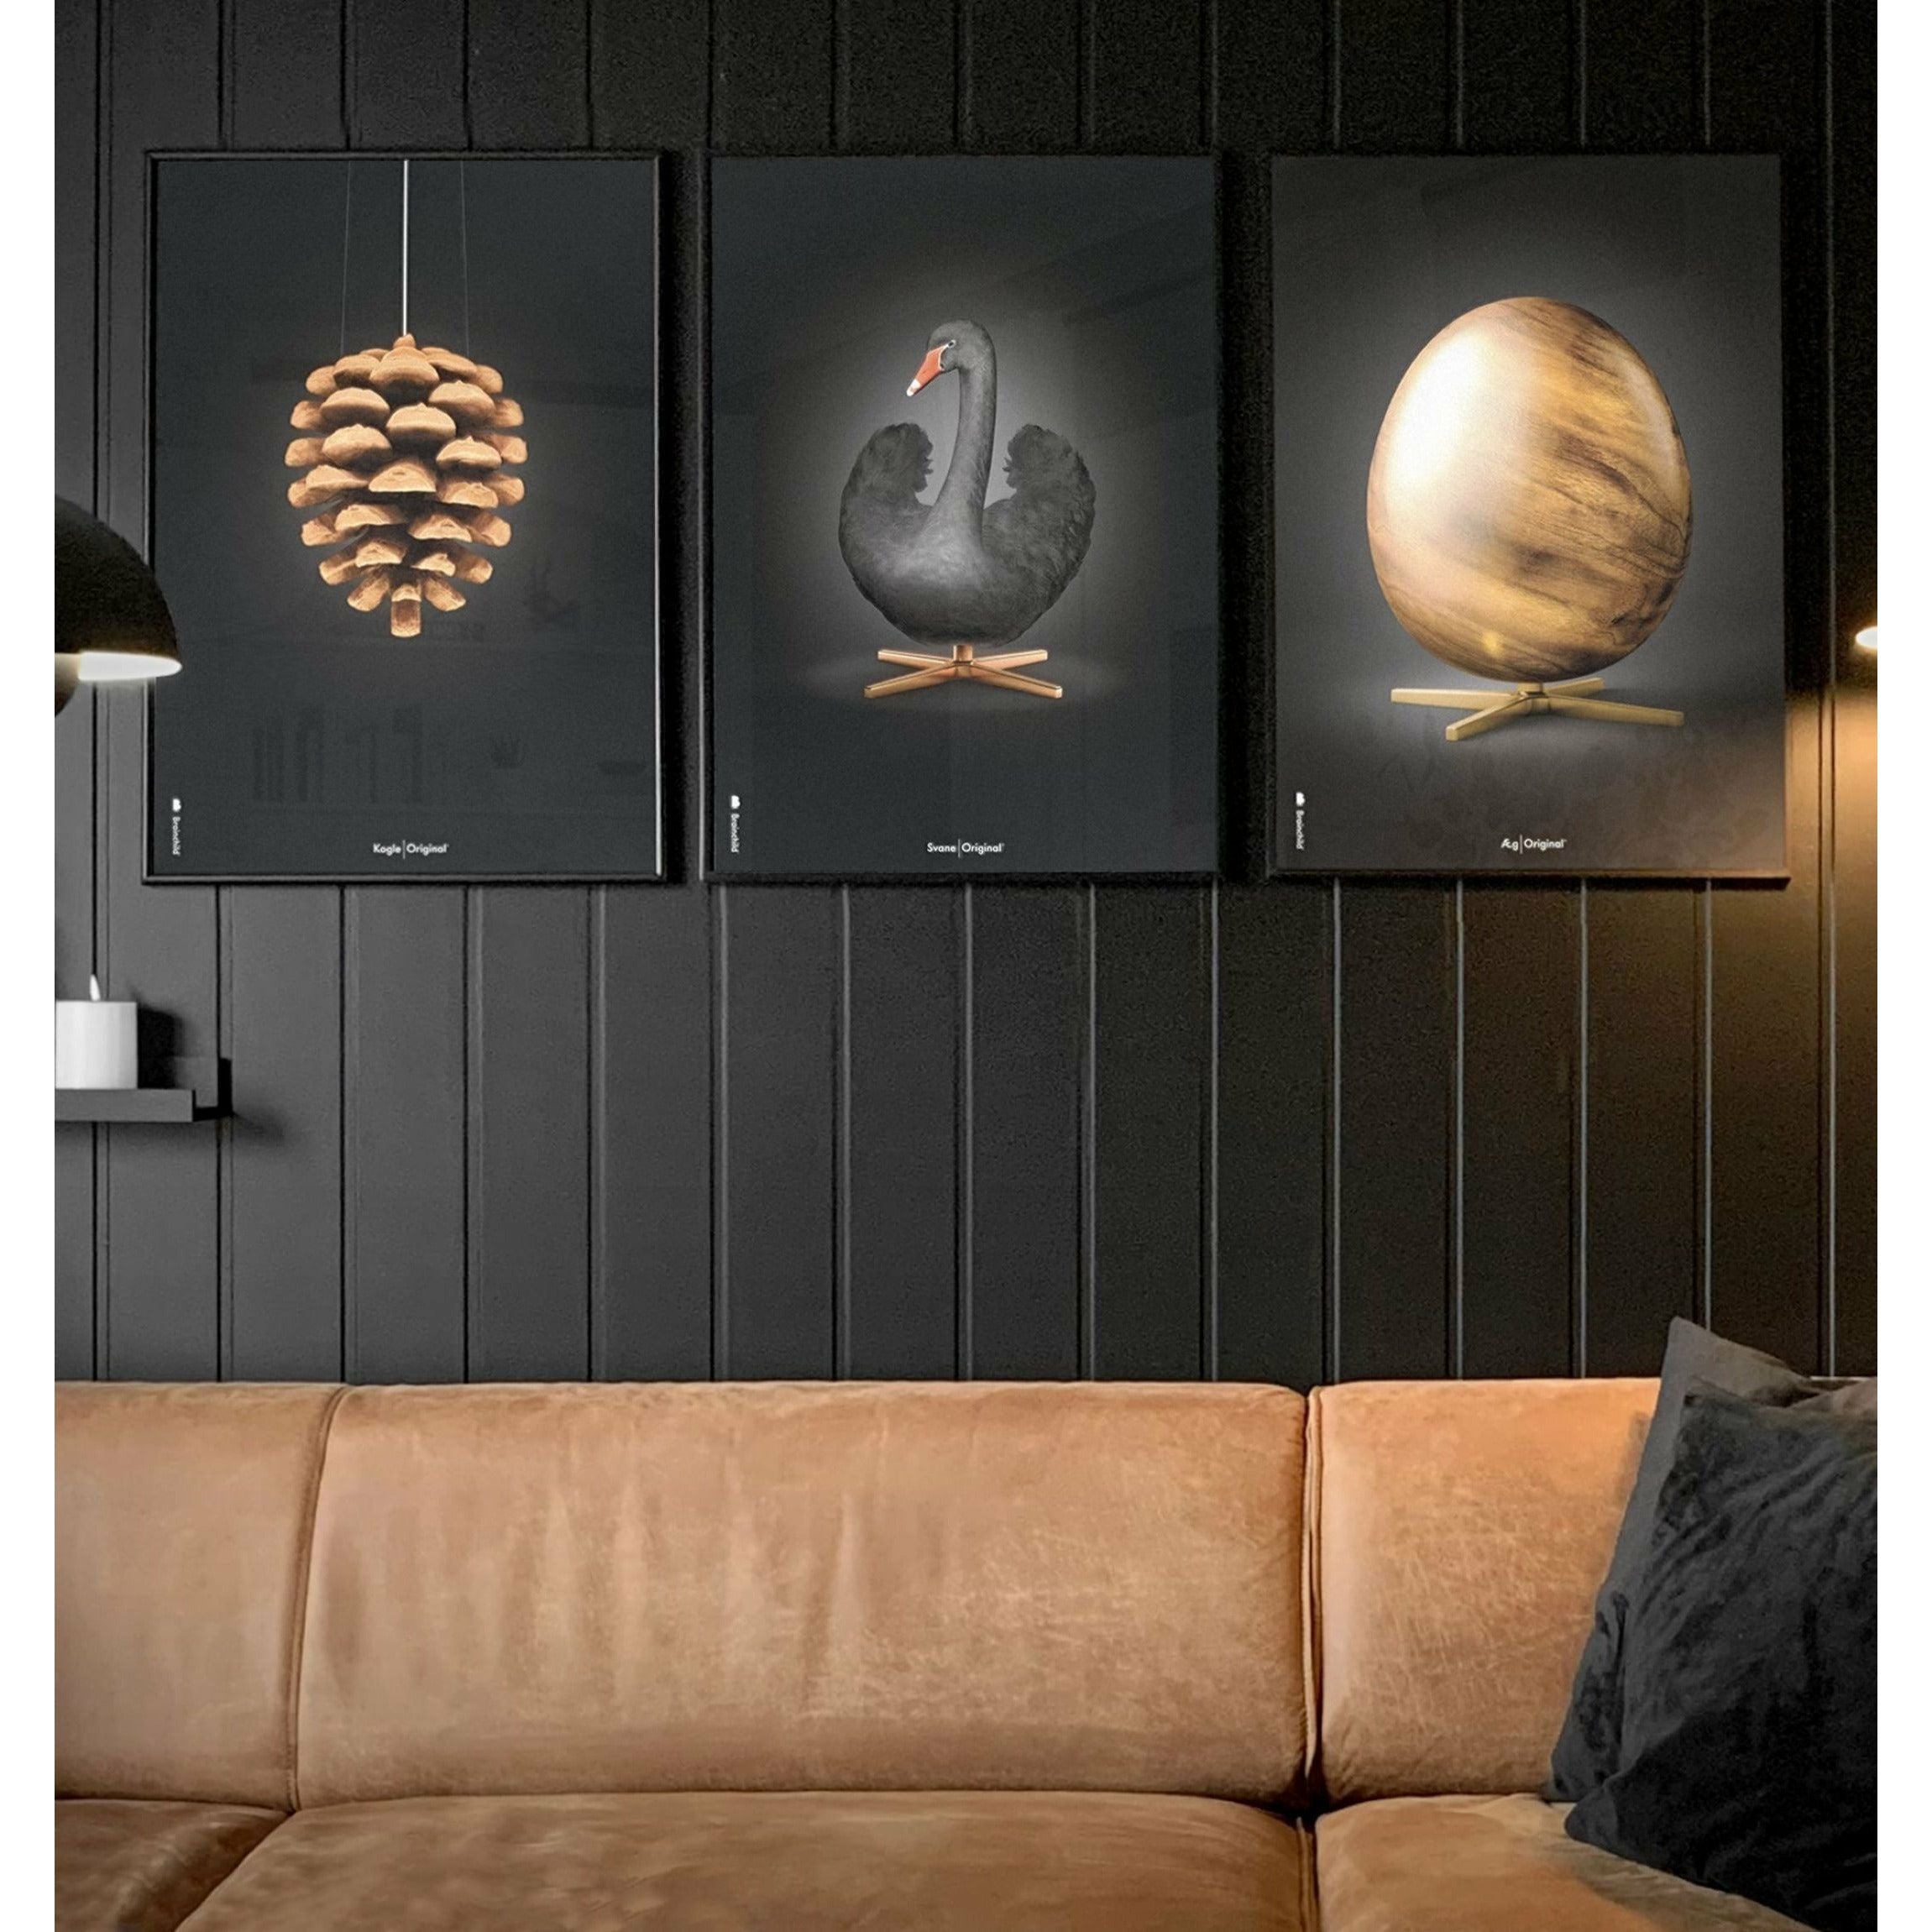 brainchild Swan Classic Poster, frame gemaakt van licht hout 30x40 cm, zwart/zwarte achtergrond